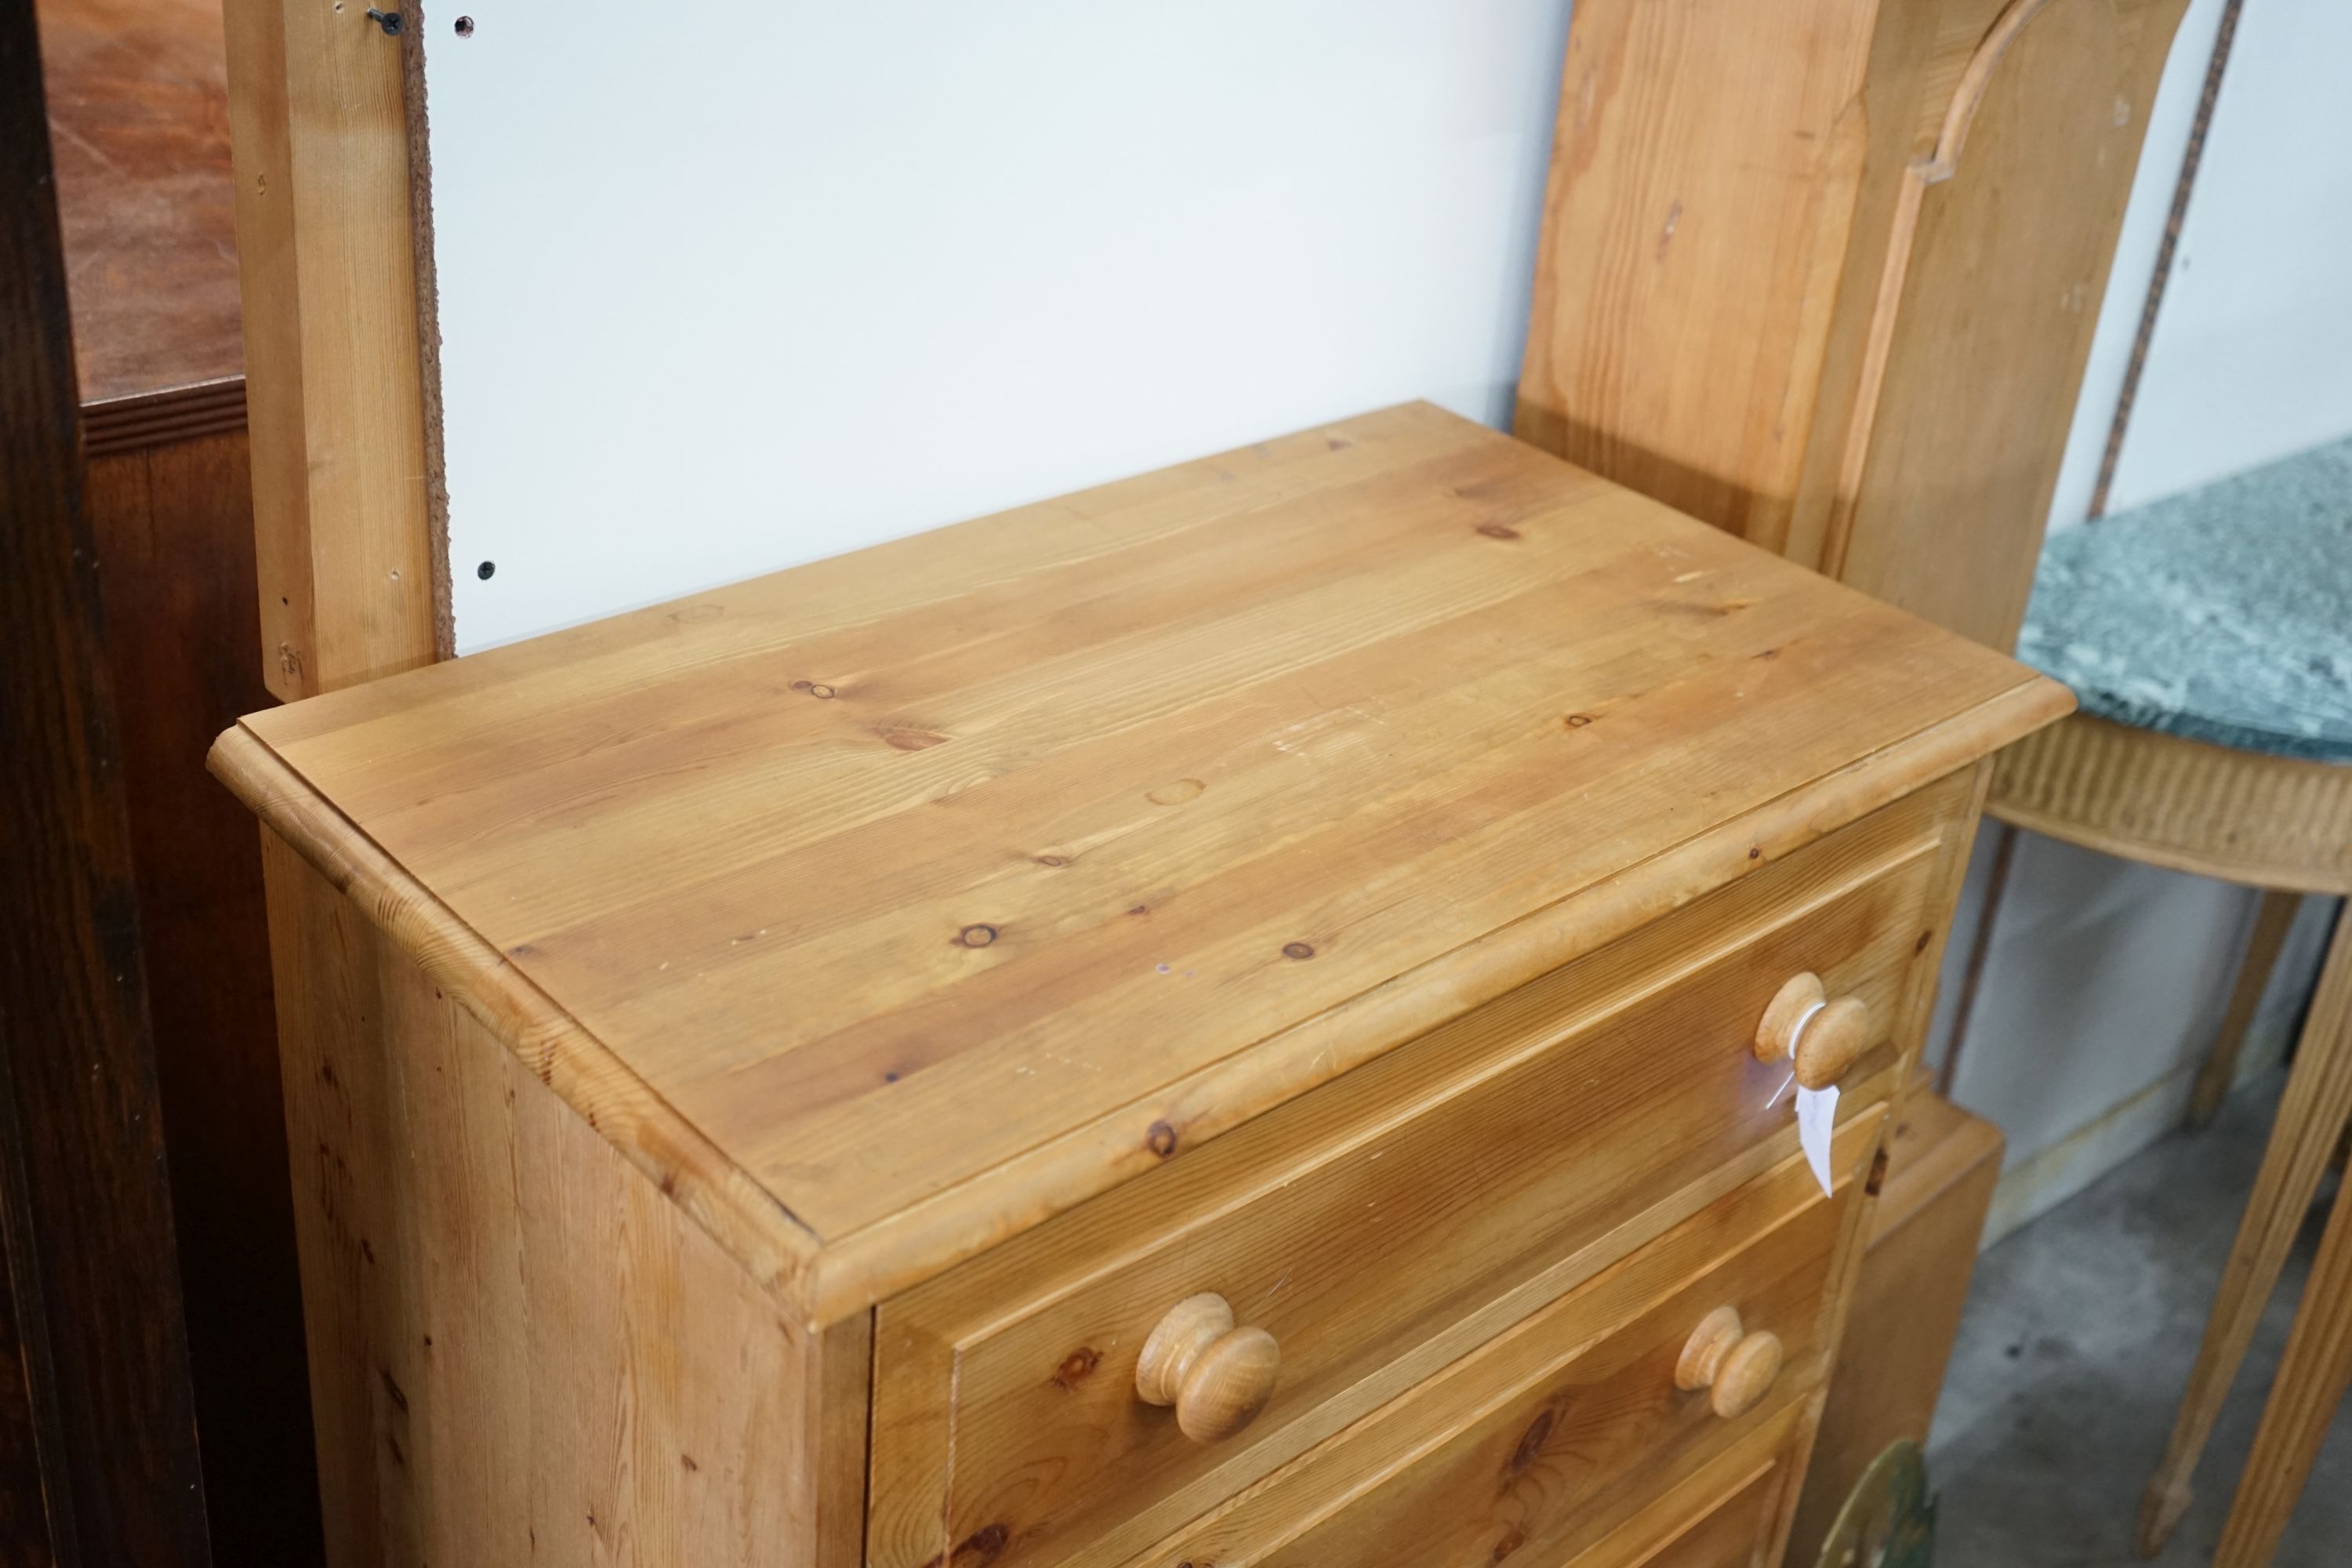 A small modern pine five door chest, width 69cm, depth 40cm, height 106cm